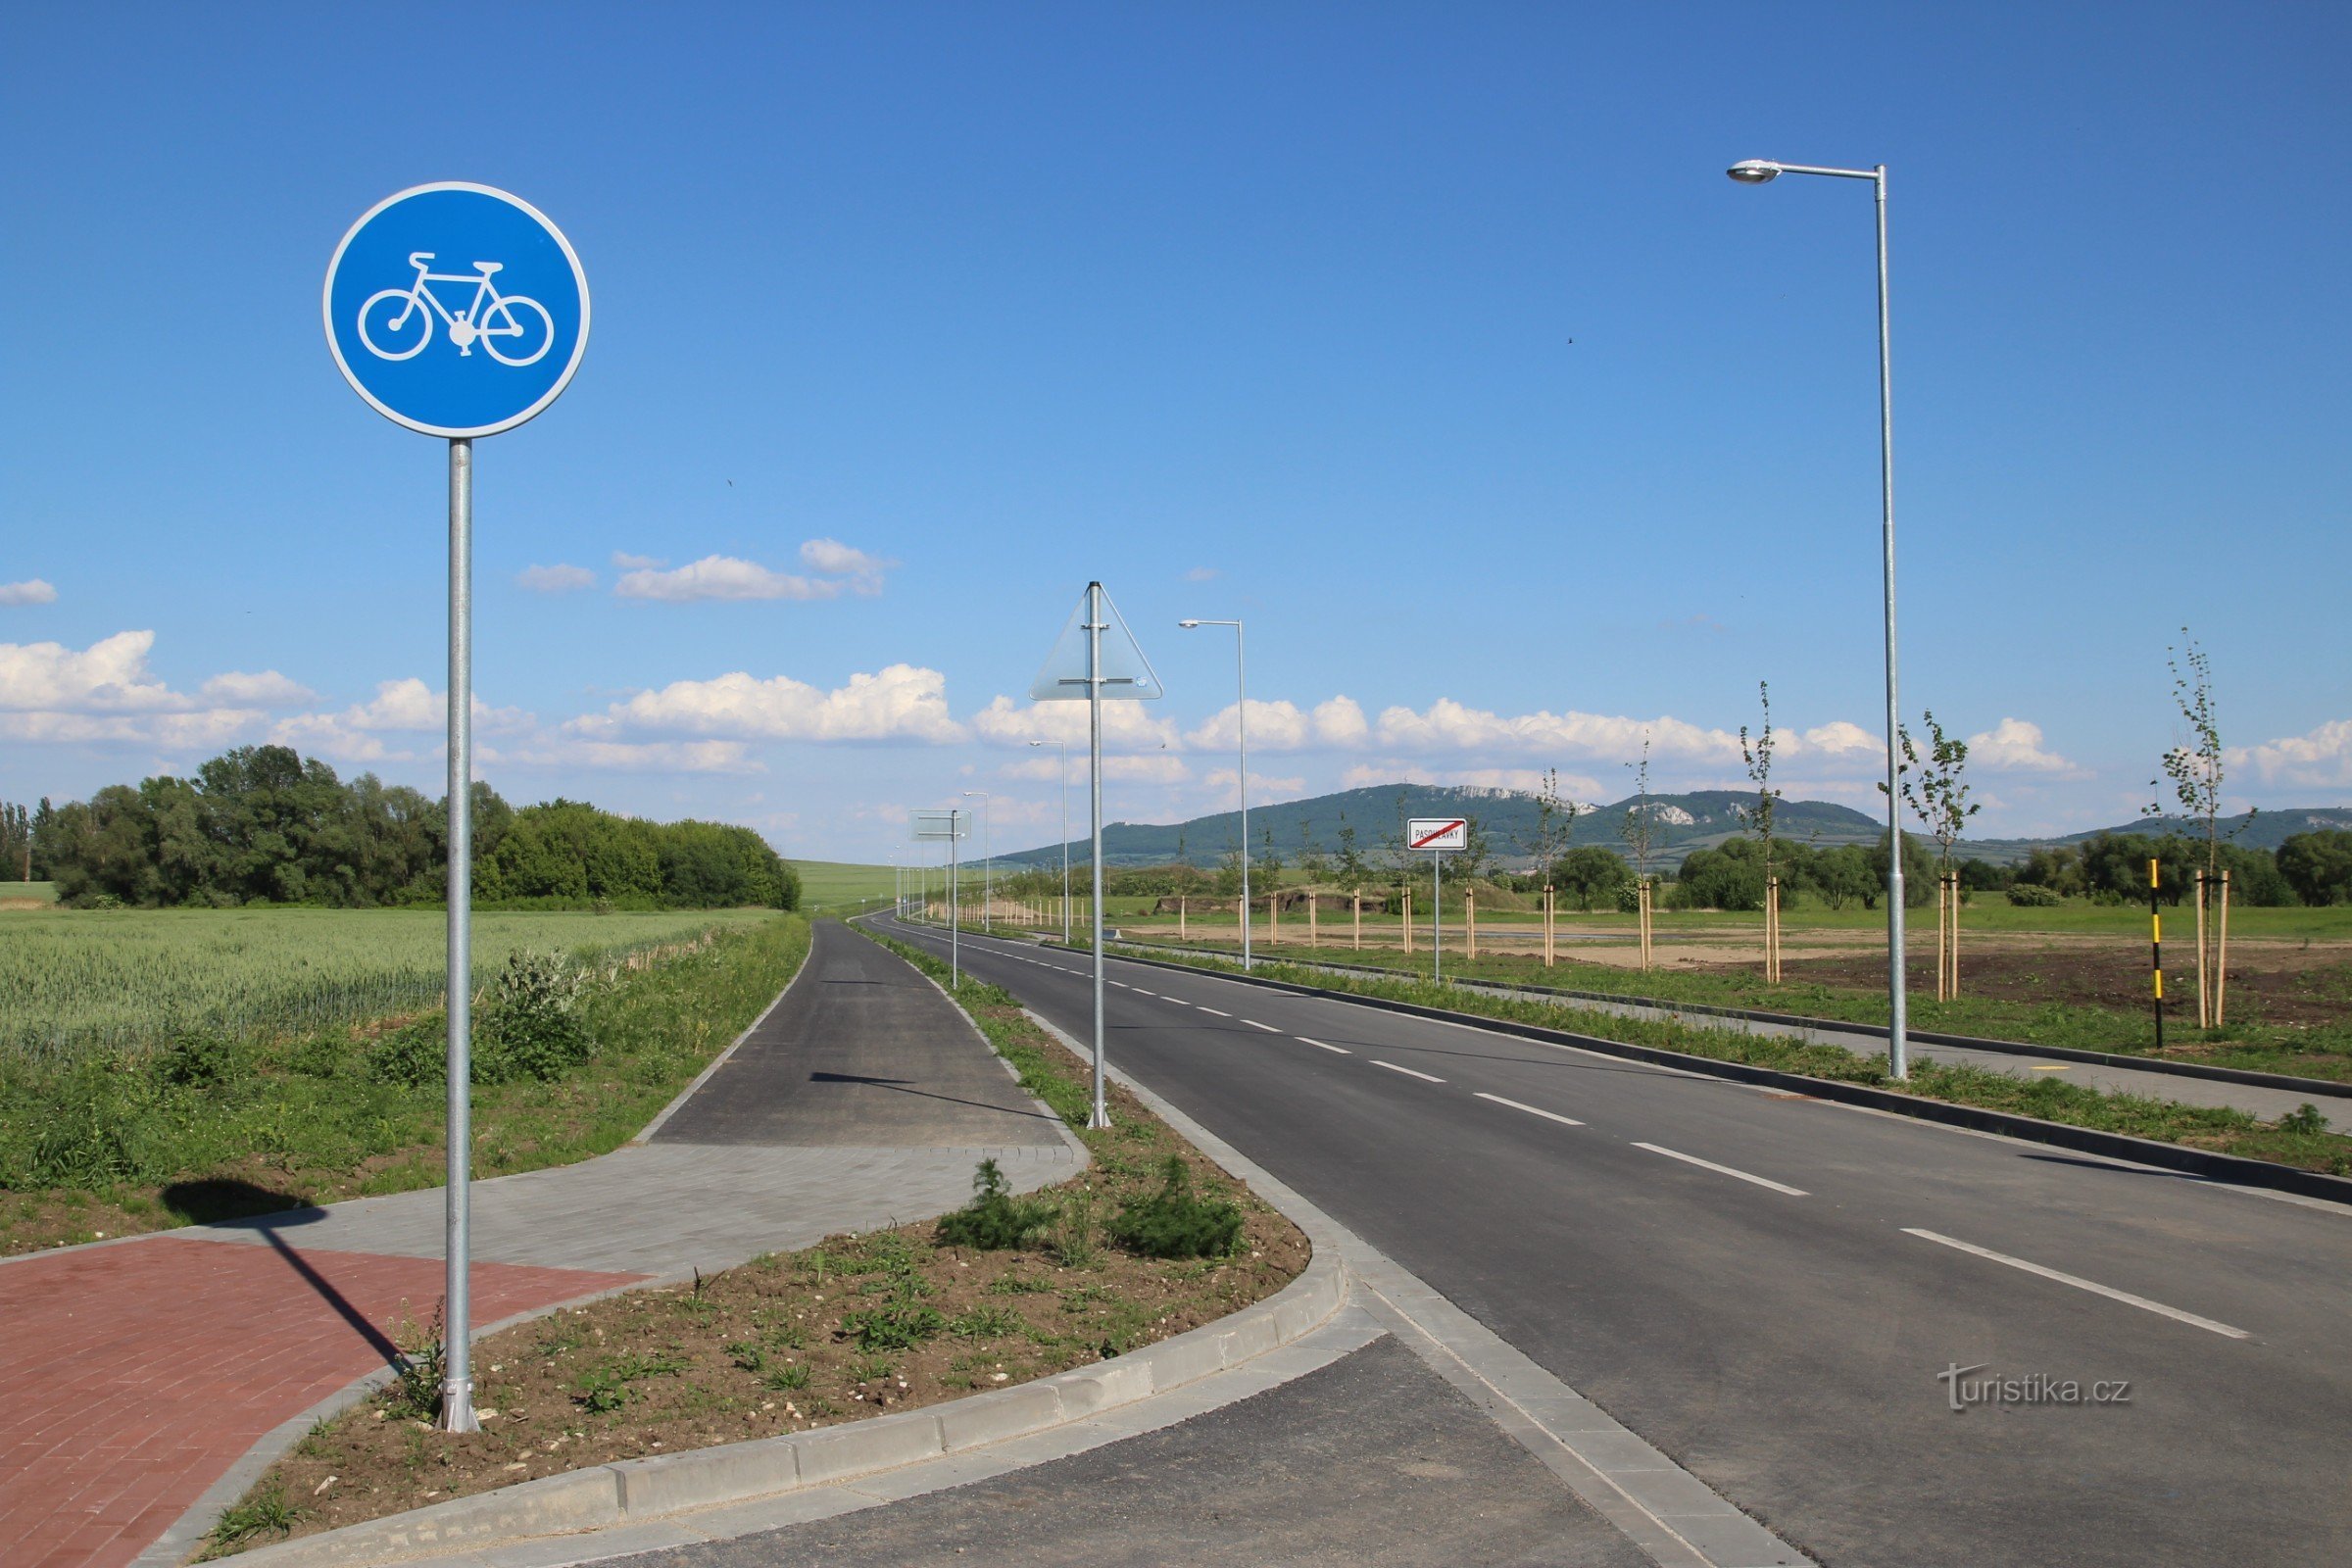 Con đường đạp xe bắt đầu ở cuối làng